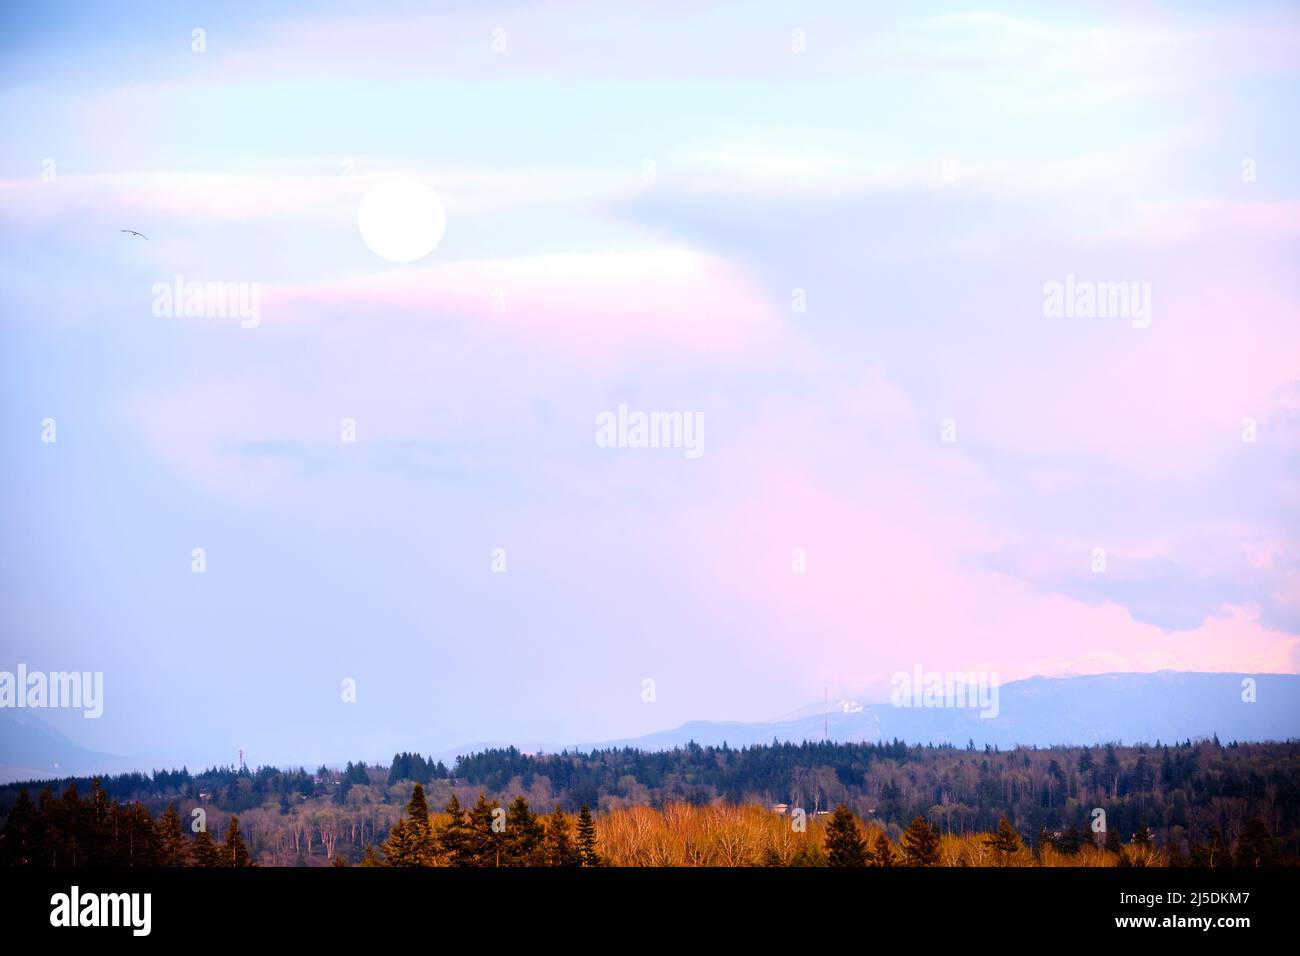 Vue de jour de la pleine lune à travers un ciel partiellement nuageux vers la base du mont Baker, WA depuis White Rock, BC. Les nuages reflètent la douce lumière rose du coucher du soleil Banque D'Images